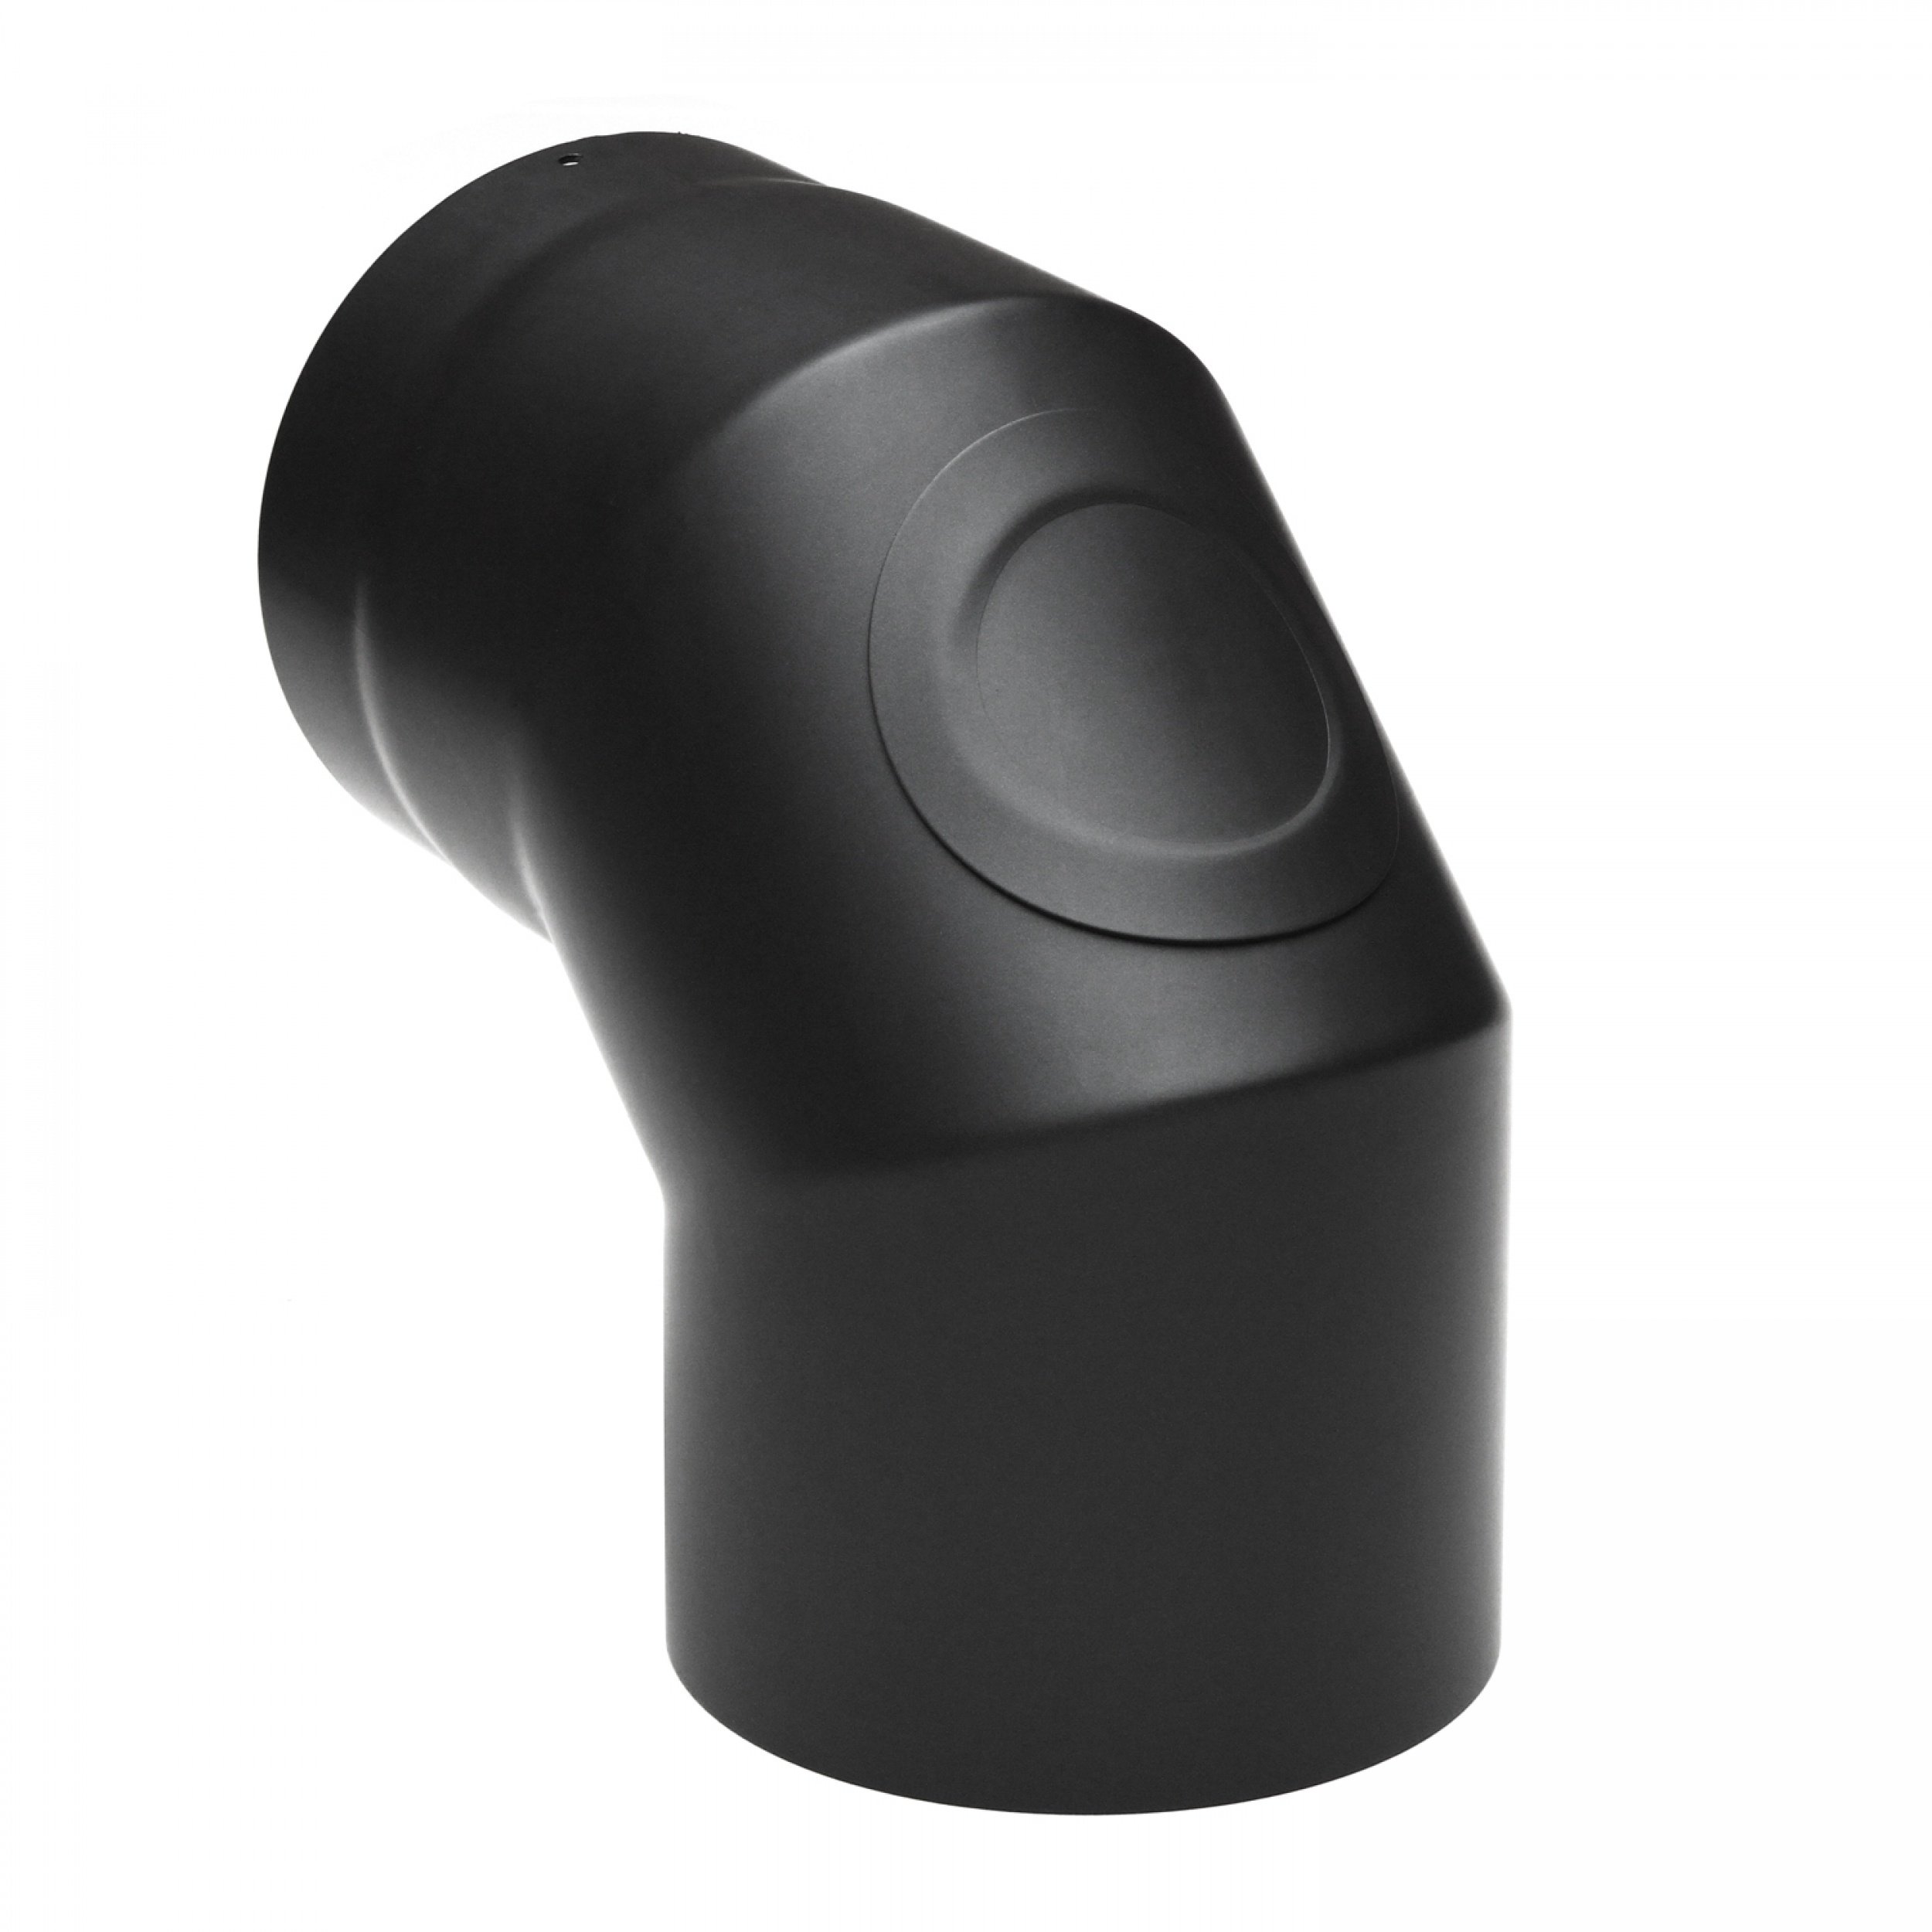 raik SH020-180-sw Raik Rauchrohrbogen/Ofenrohr 180mm - 90° mit Reinigungsöffnung schwarz